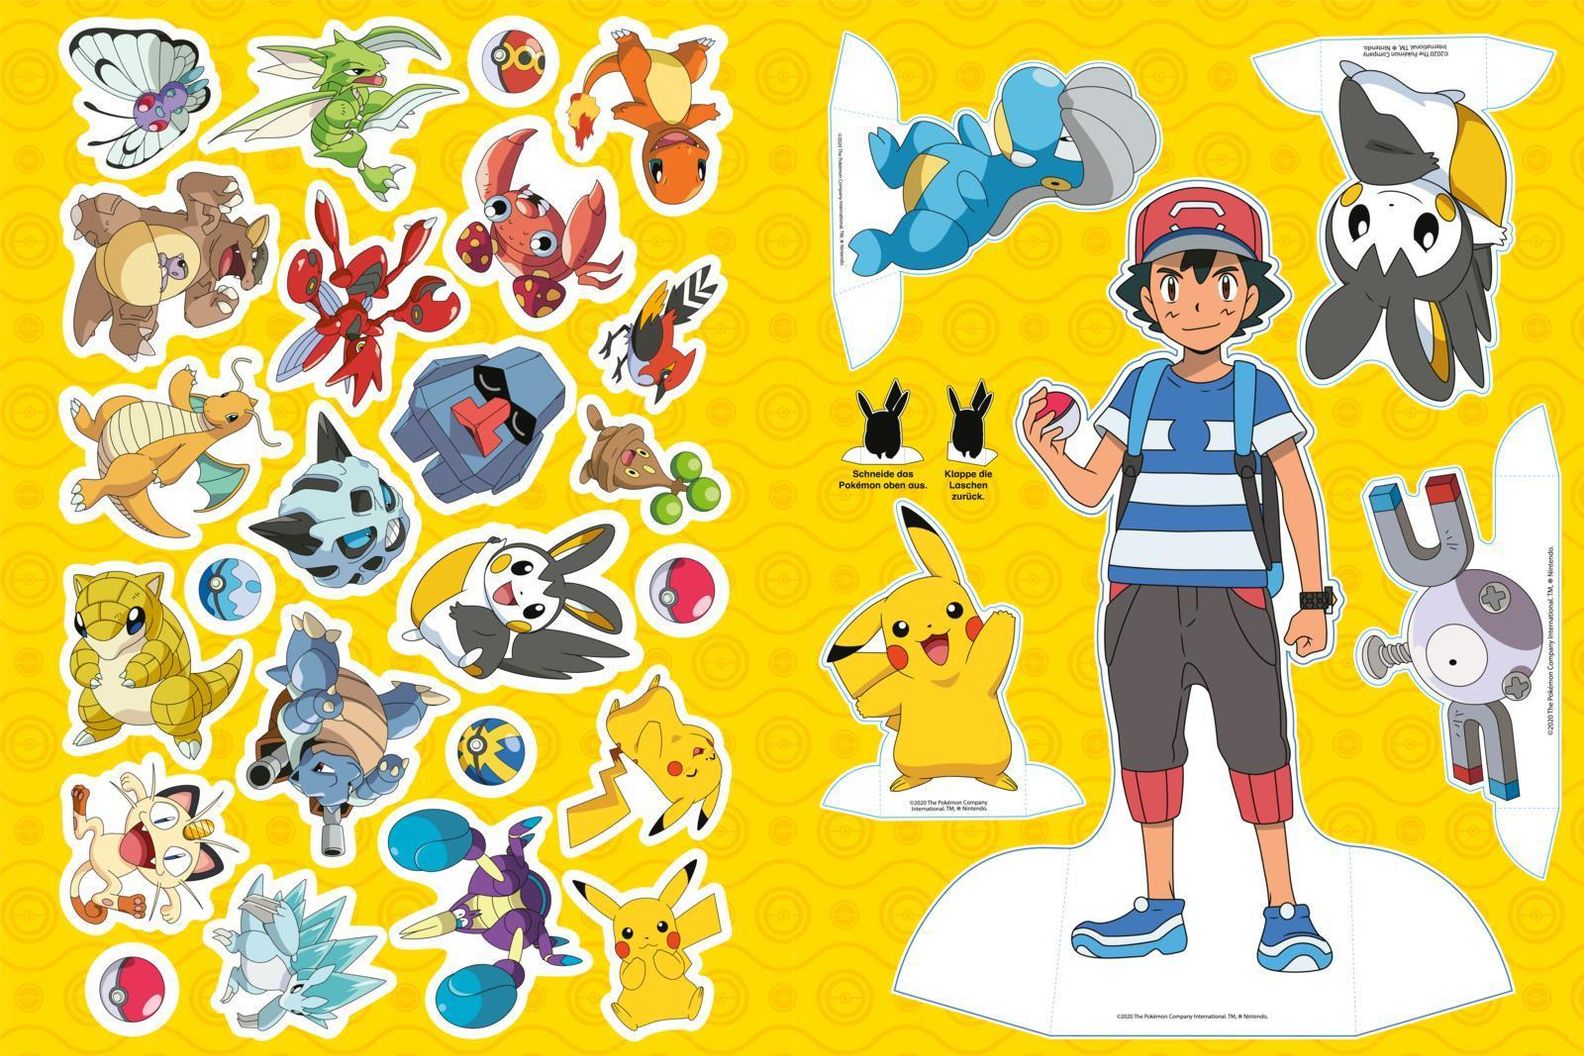 Pokémon Activity-Buch: Stickerspaß mit Pikachu und seinen Freunden